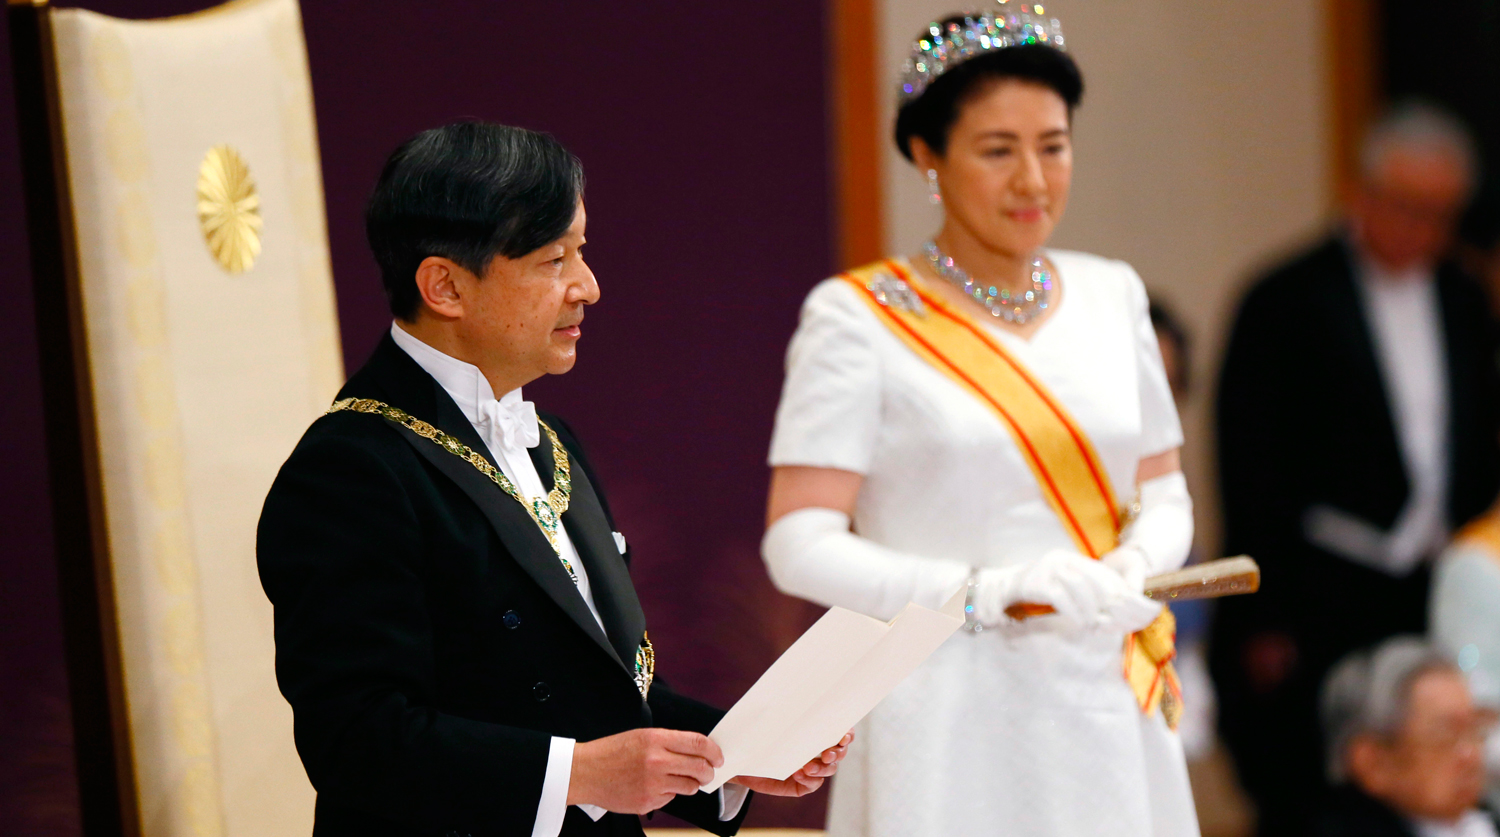 

Император Нарухито и императрица Масако во время торжественной церемонии во дворце в Токио, 1 мая...

